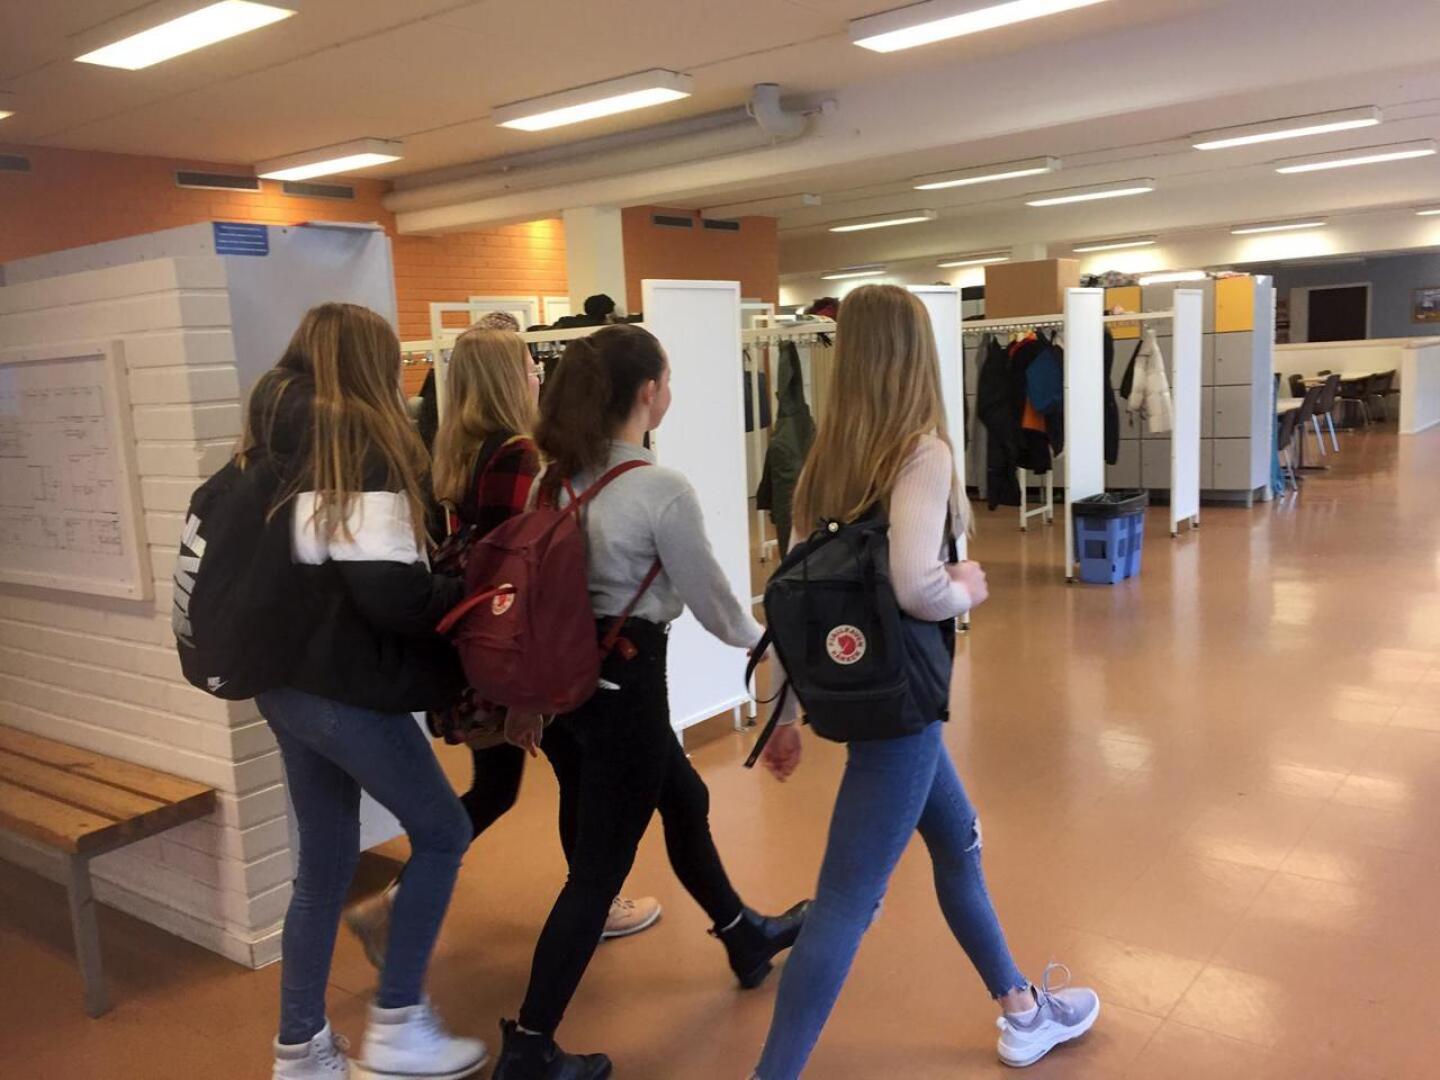 Osa pietarsaarelaisesta Oxhamnin yläkoulusta suljetaan hiihtoloman aikana. Opetus jatkuu Optiman ja Campus Allegron tiloissa.